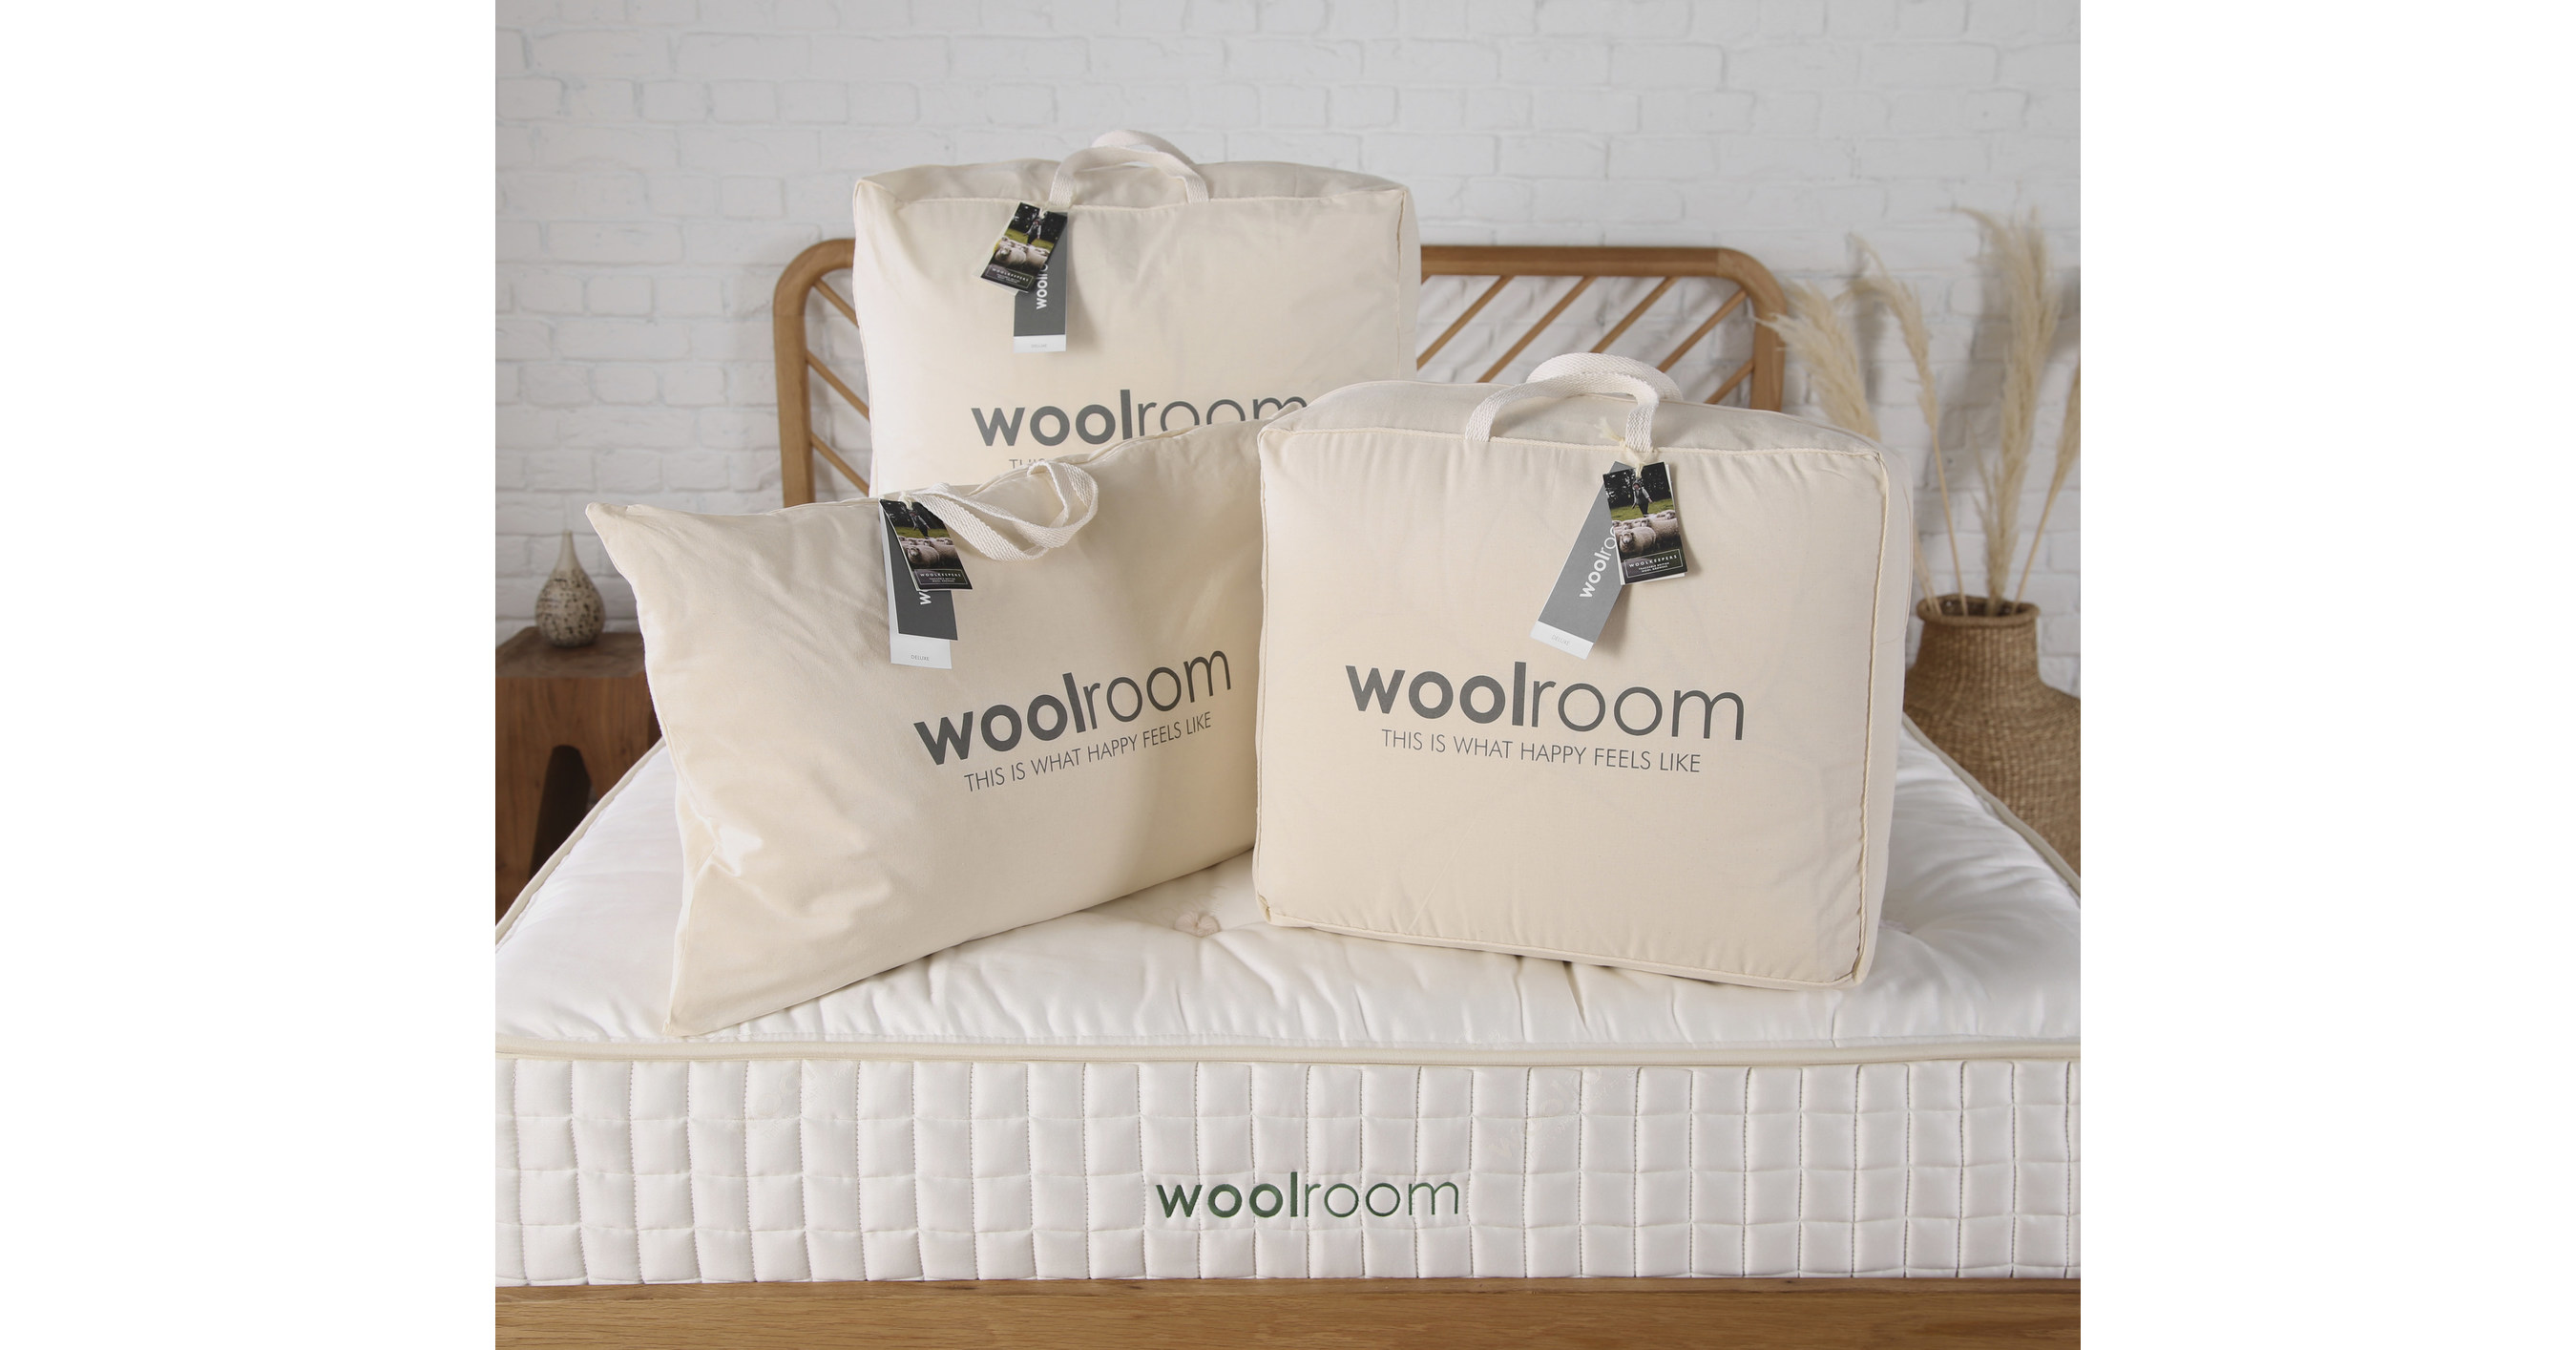 woolroom mattress topper reviews